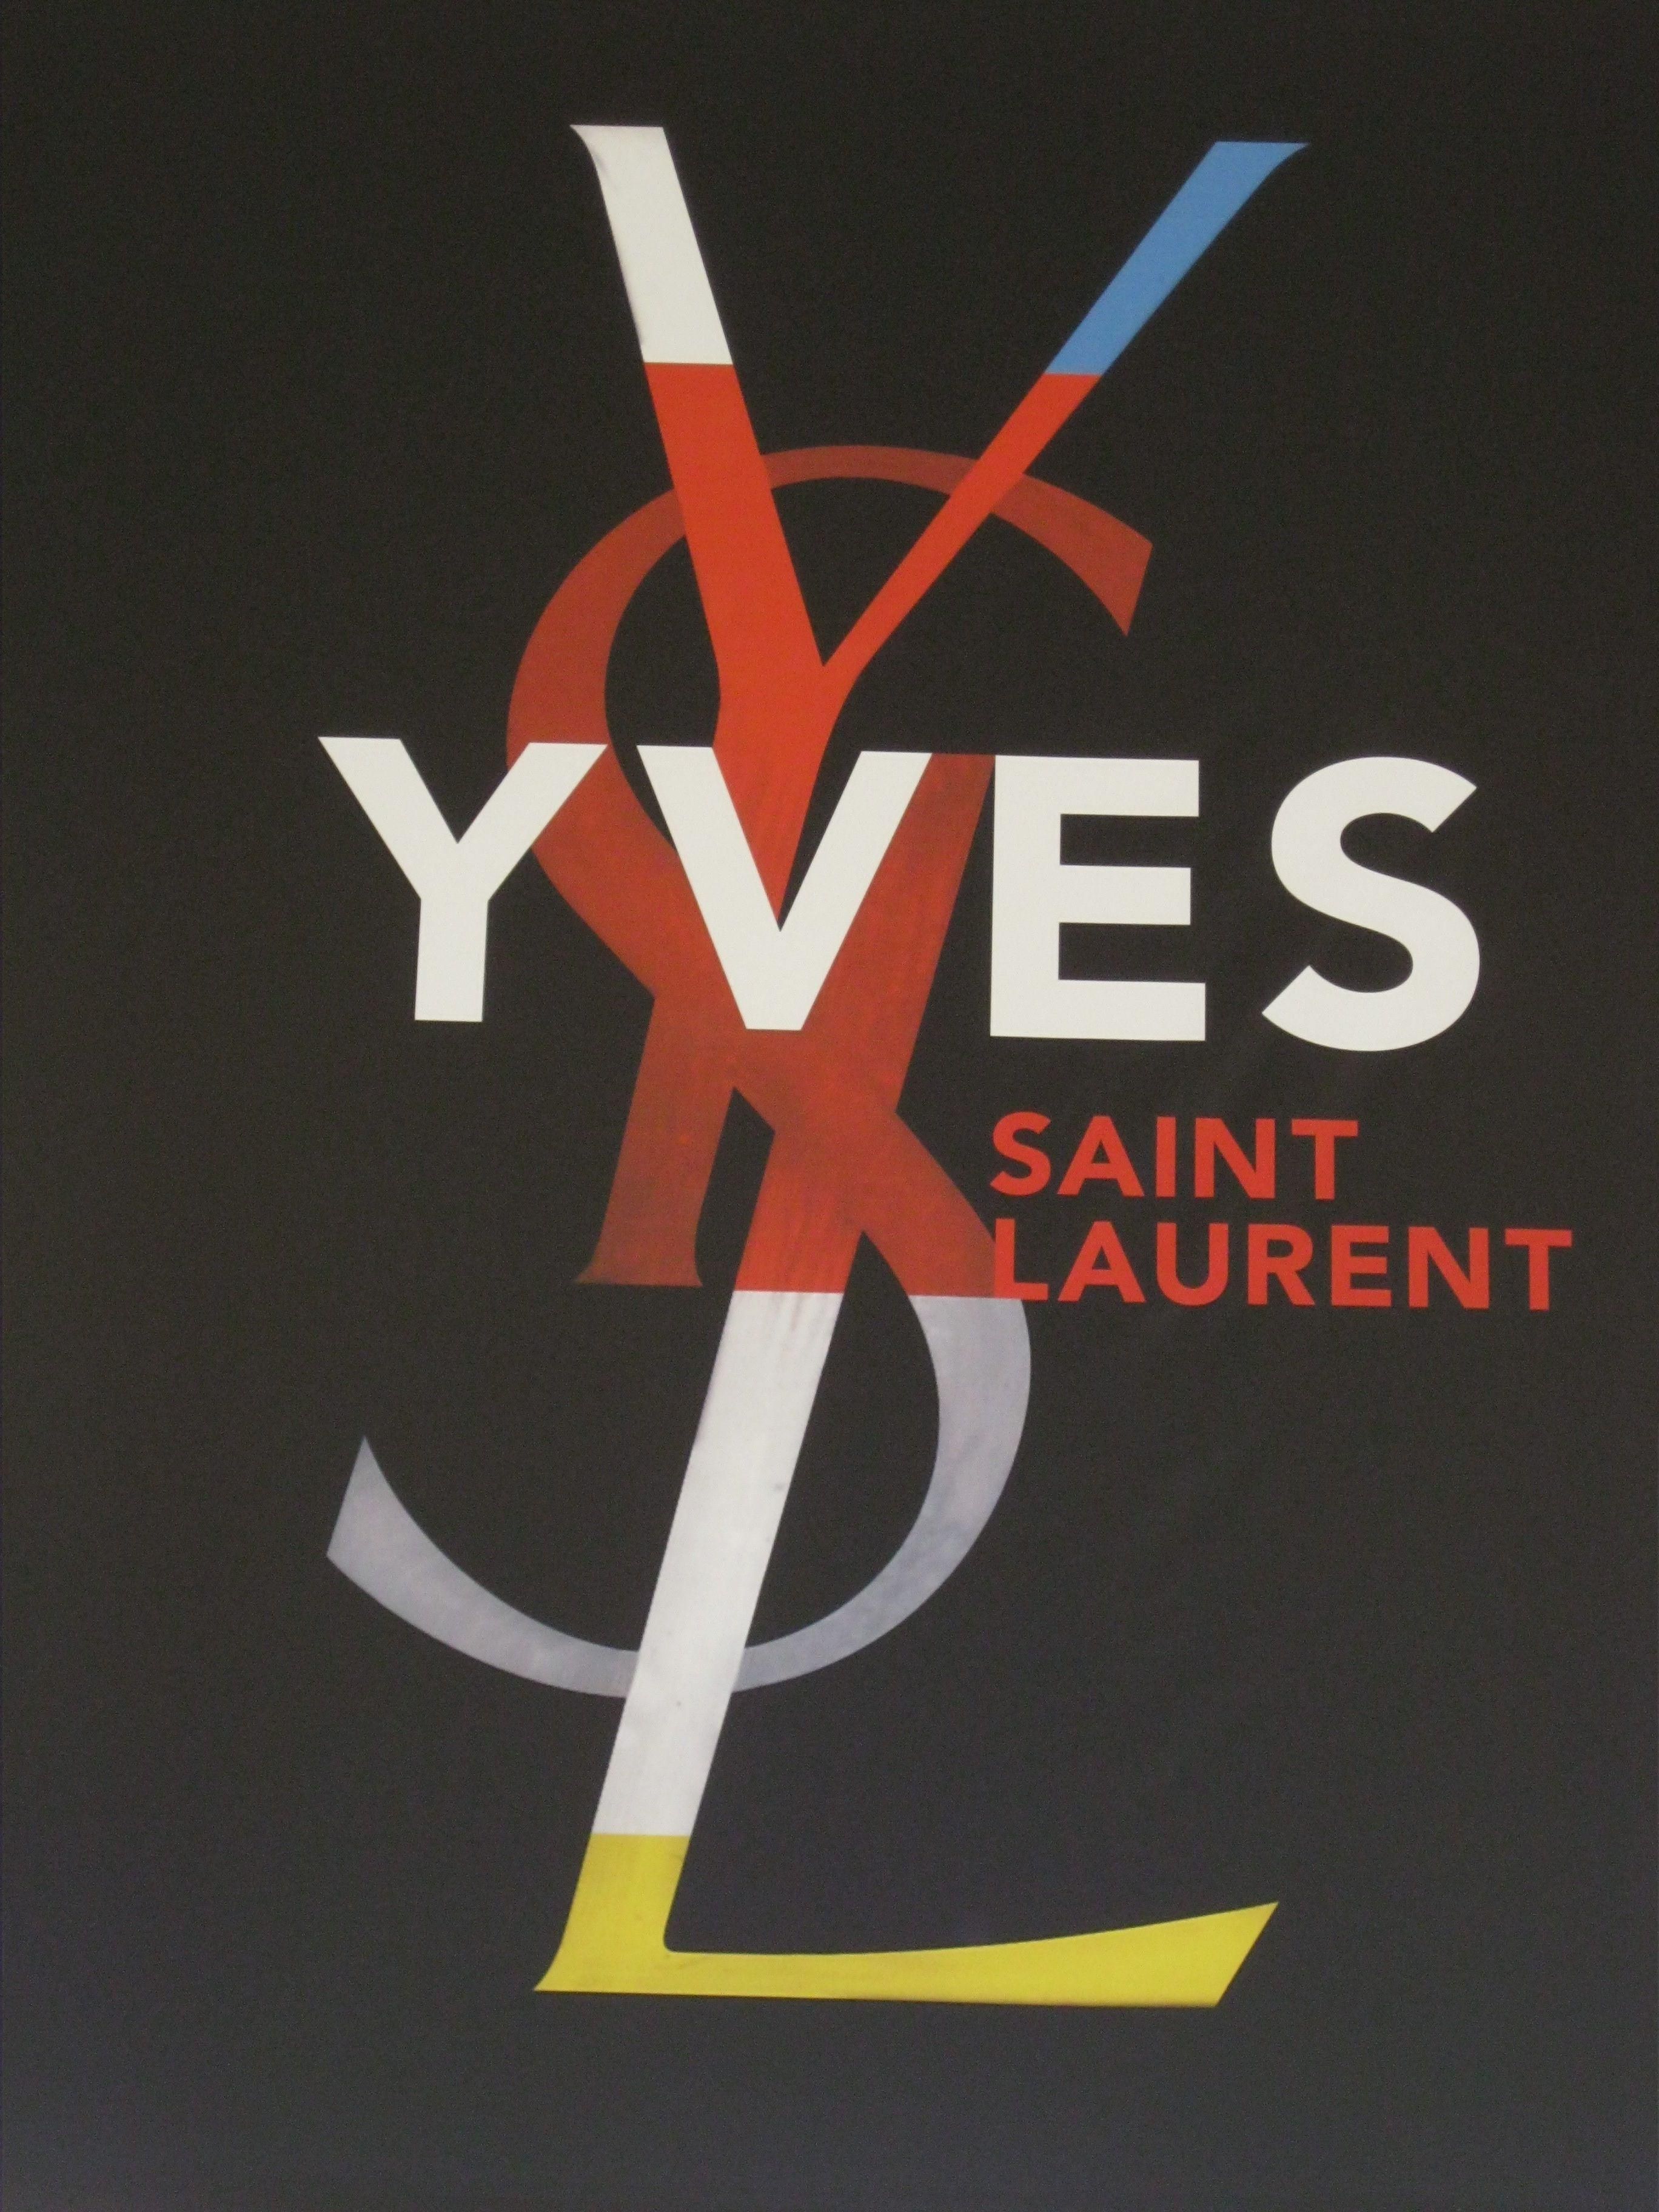 Yves Saint Laurent Wallpaper, Picture